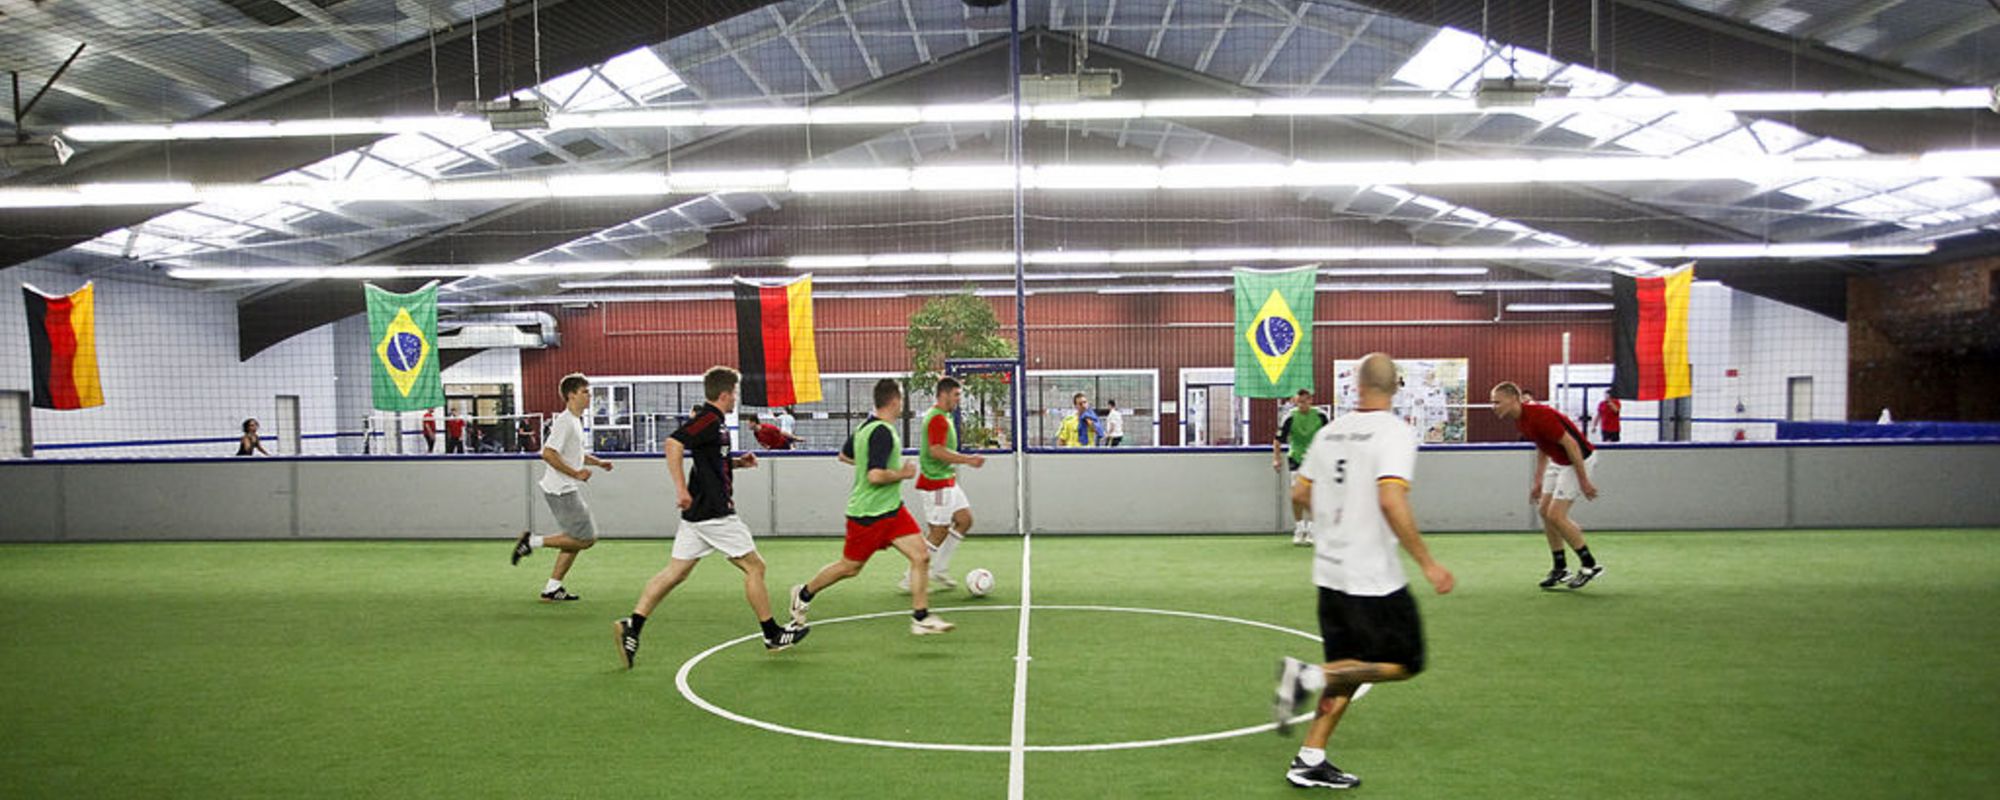 Indoor Soccer - im activity und Sportforum